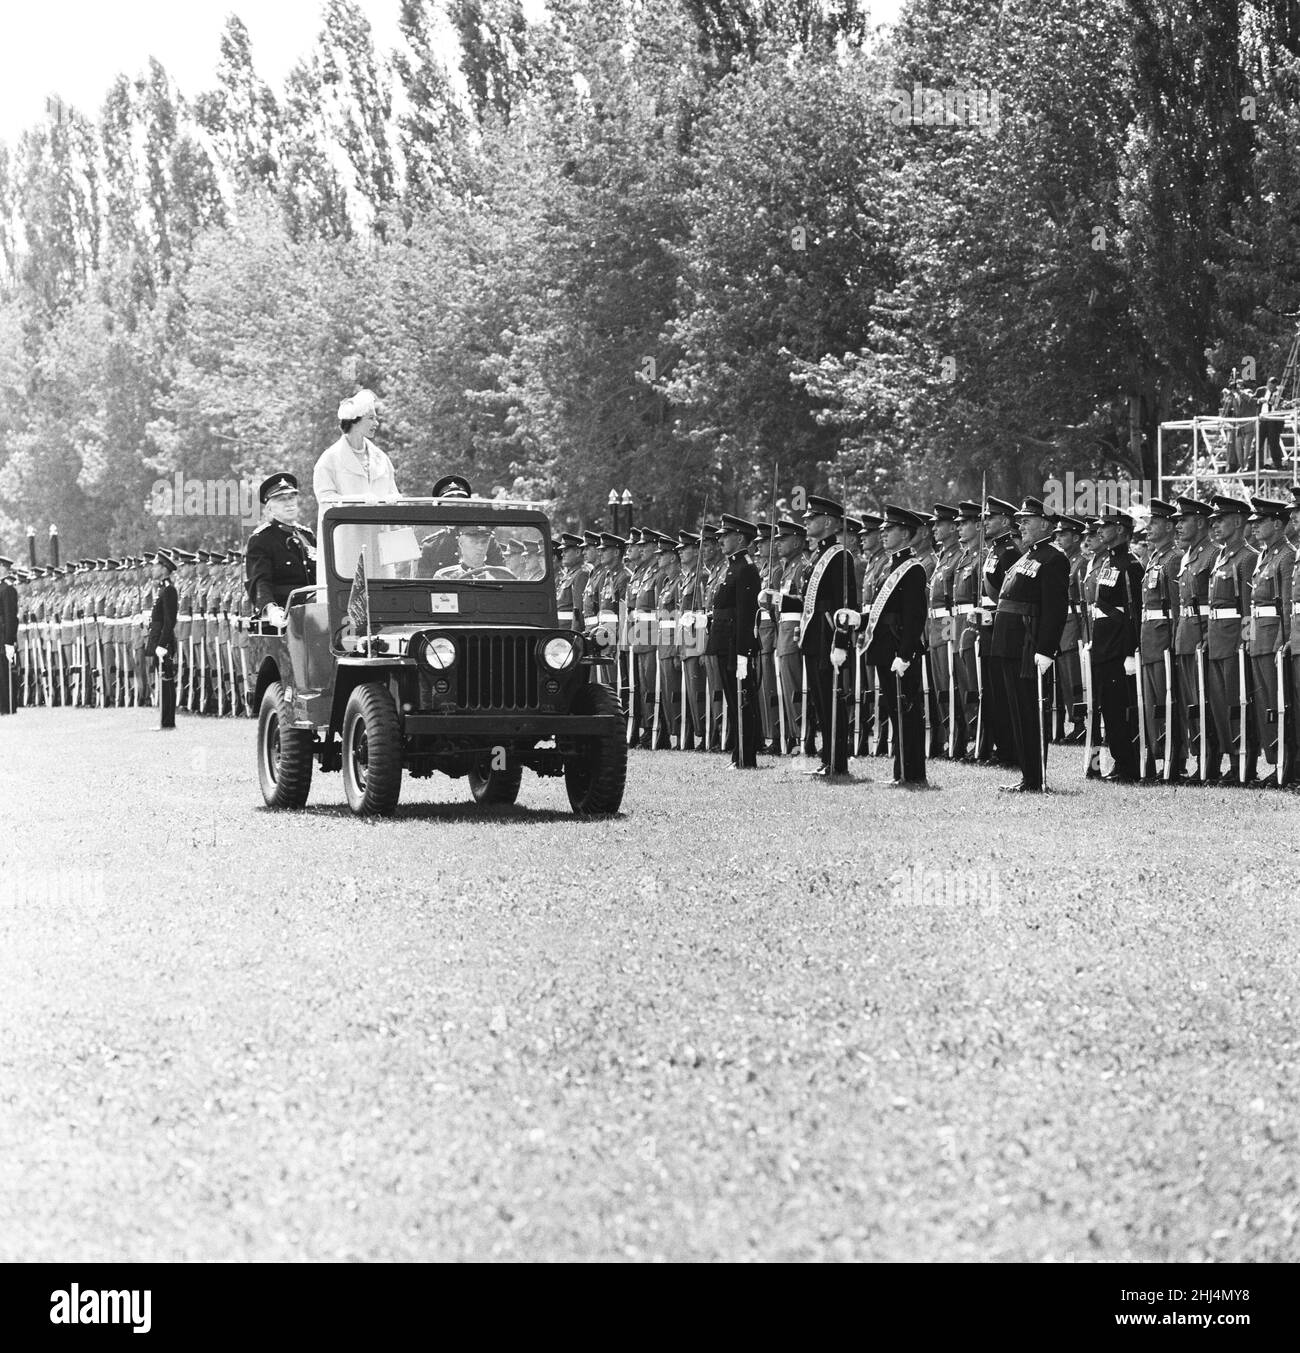 La reine Elizabeth II lors de sa visite au Canada, le 1959 juin.La Reine inspecte la Garde d'honneur, le Royal 22nd Regiment, souvent appelé Van Doos.La Reine et le Prince Philip ont visité le Canada du 18th juin au 1st août 1959, photo prise le 23rd juin 1959. Banque D'Images